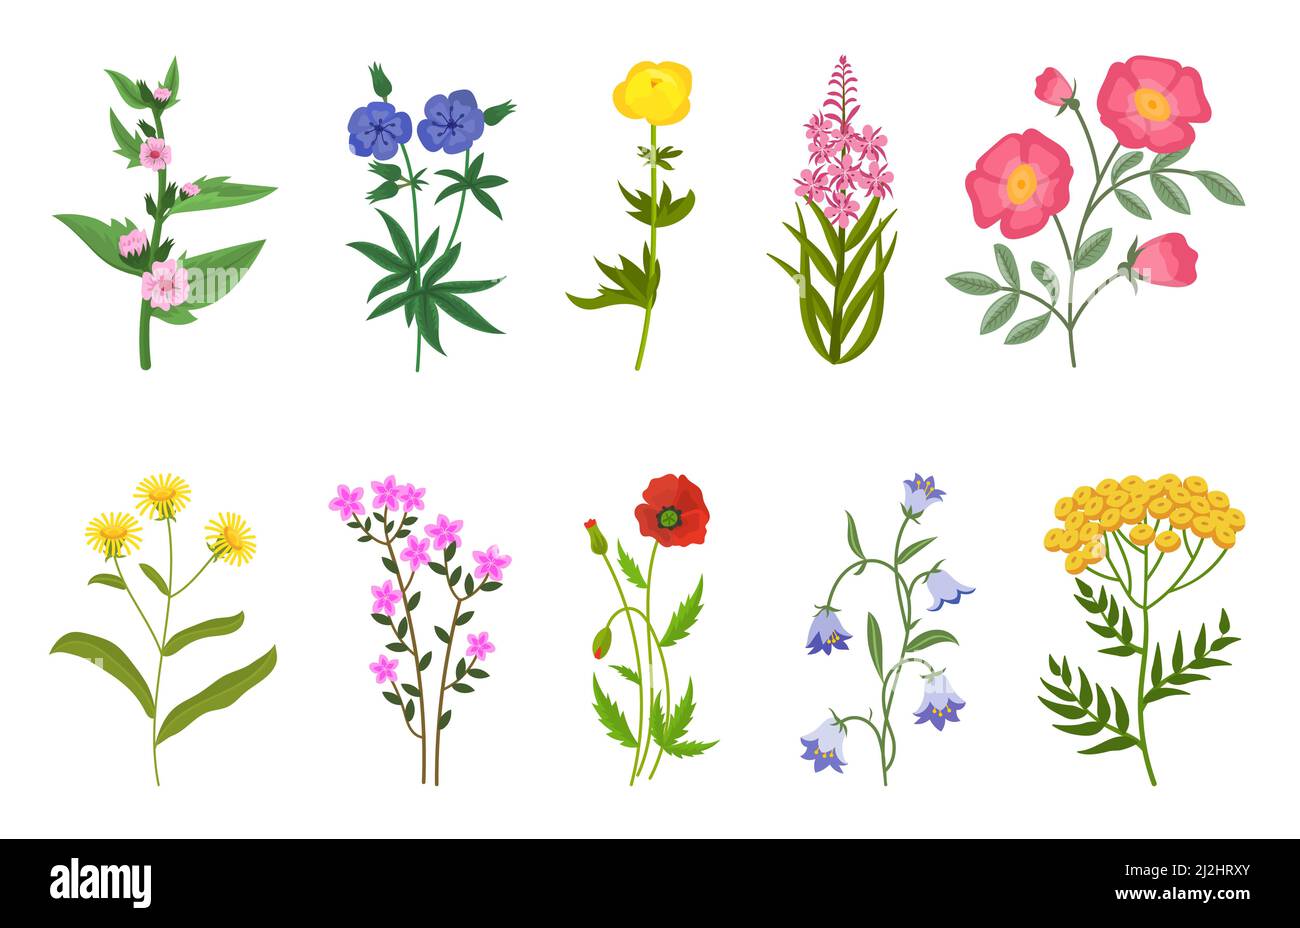 Jeu d'illustrations vectorielles de fleurs sauvages différentes.Collection de fleurs de prairie ou de champ, buttercup jaune et pissenlit, cloches, coquelicots isolés sur le whi Illustration de Vecteur